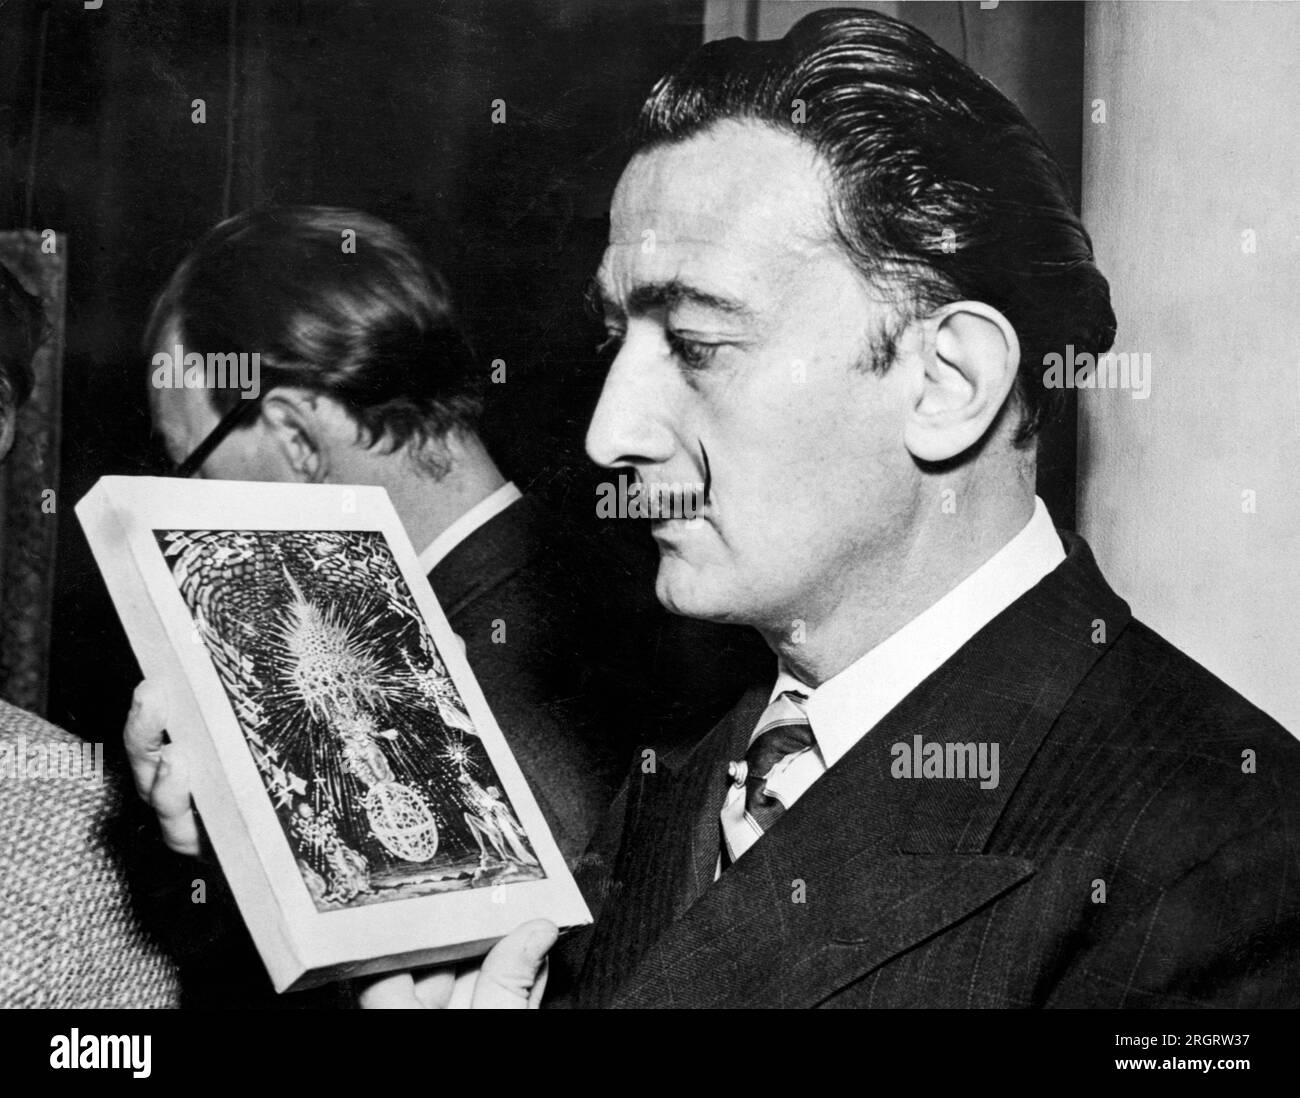 Londres, Angleterre : 3 décembre 1951 l'artiste surréaliiste Salvador Dali tient un croquis miniature d'une peinture, 'l'Assomption de la Vierge' lors d'une exposition de son travail à la Broton Street Lefevre Gallery. Il commencera bientôt à travailler sur la peinture en taille réelle. Banque D'Images